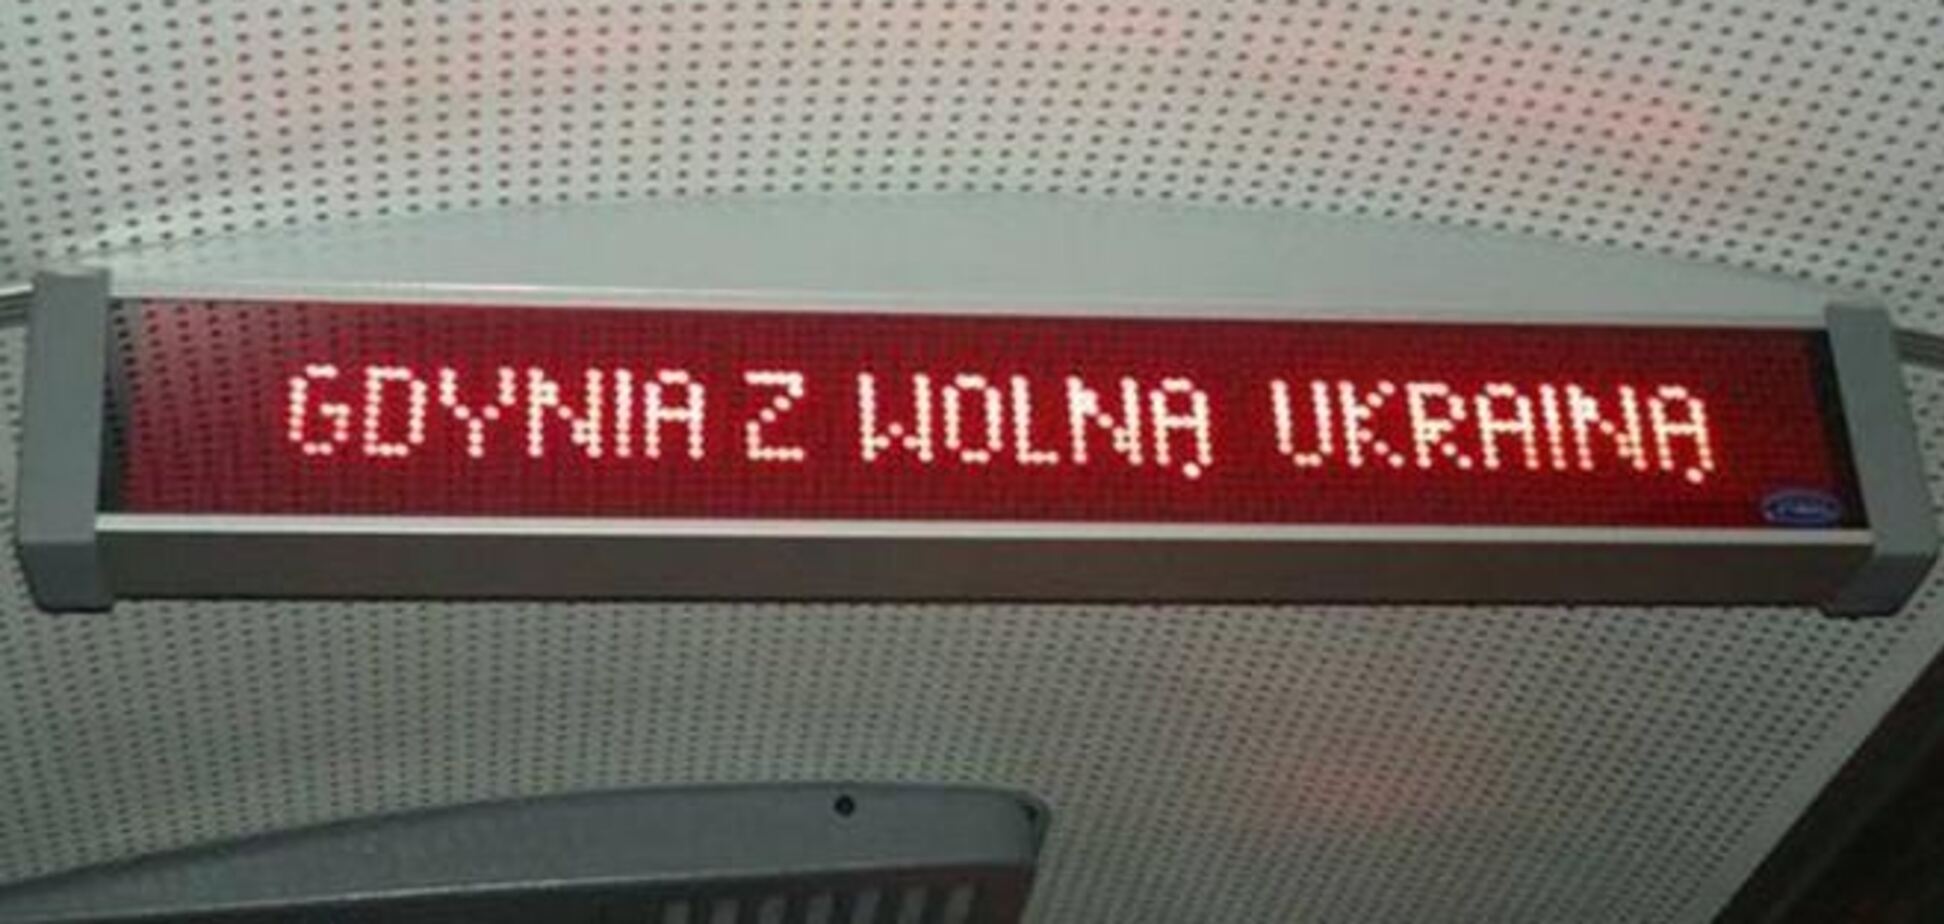 У транспорті польської Гдині тепер оголошують: 'Гдиня з вільної України'